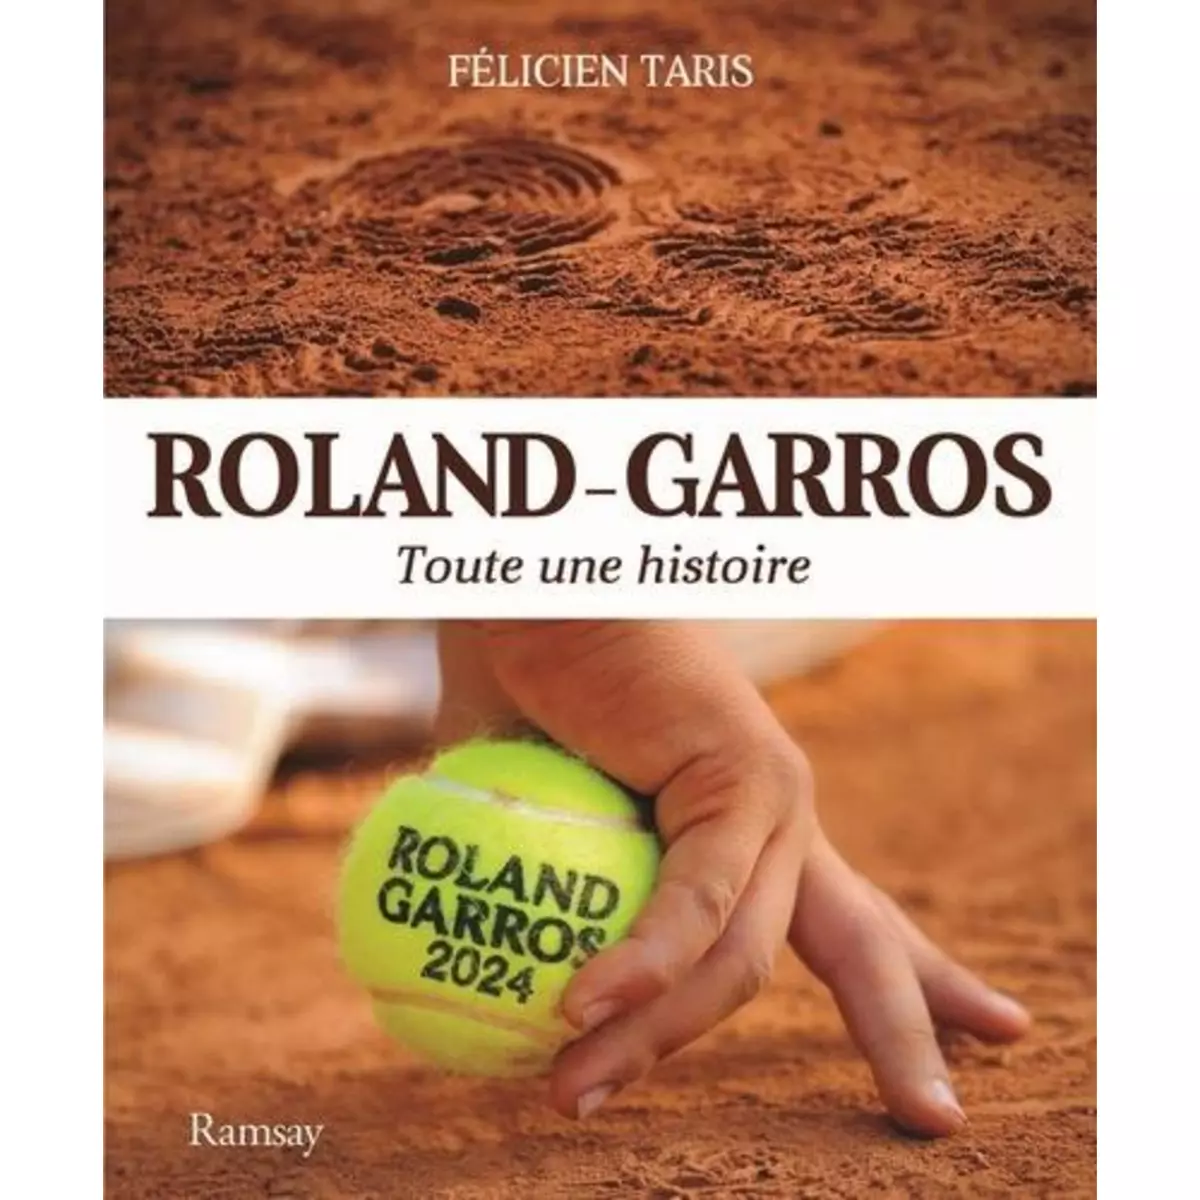  ROLAND-GARROS. TOUTE UNE HISTOIRE, EDITION 2024, Taris Félicien